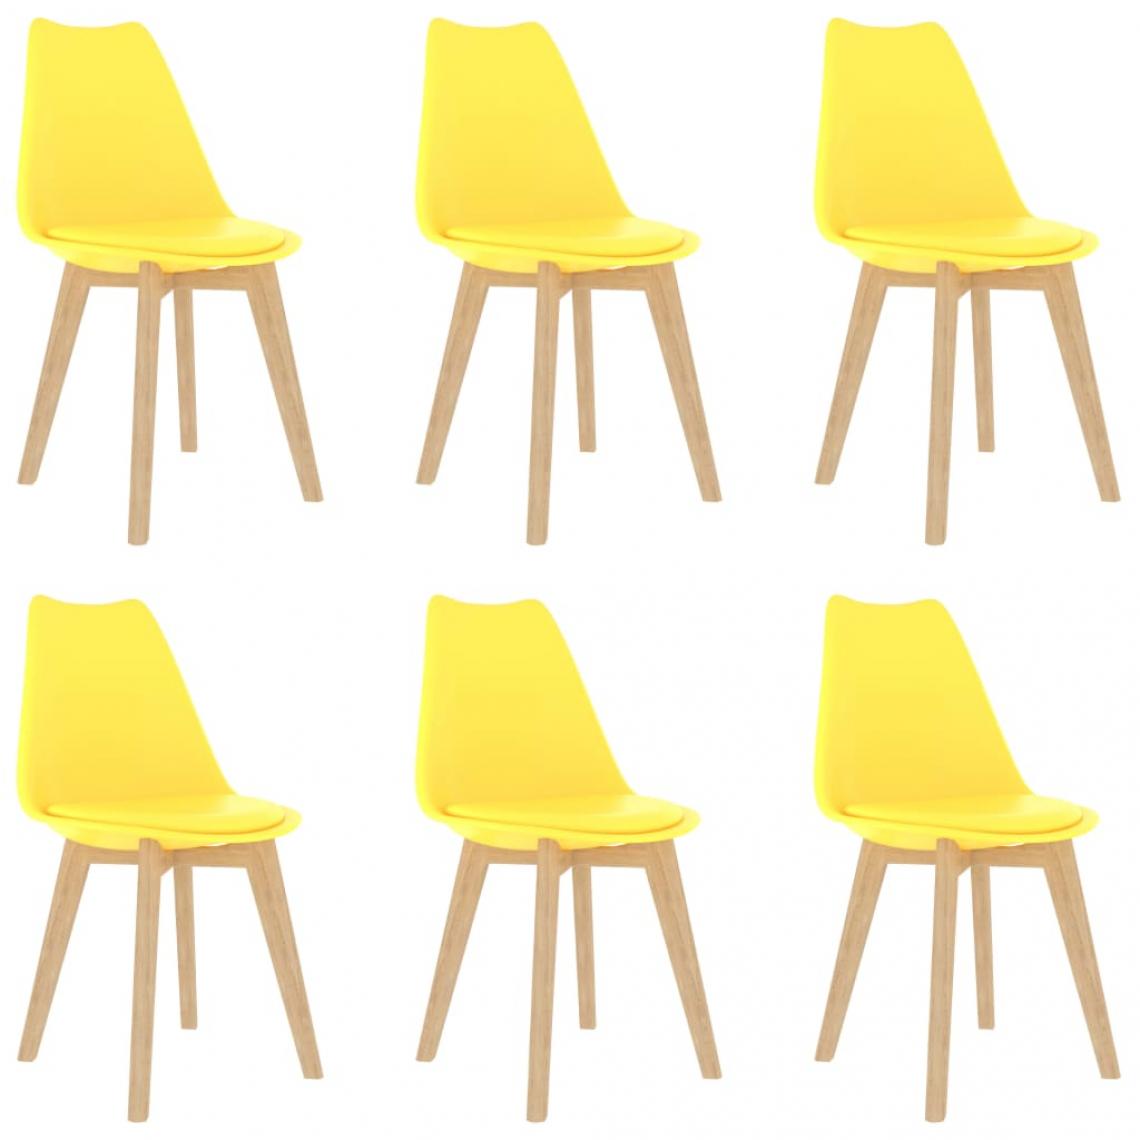 Decoshop26 - Lot de 6 chaises de salle à manger cuisine design moderne plastique jaune CDS022526 - Chaises